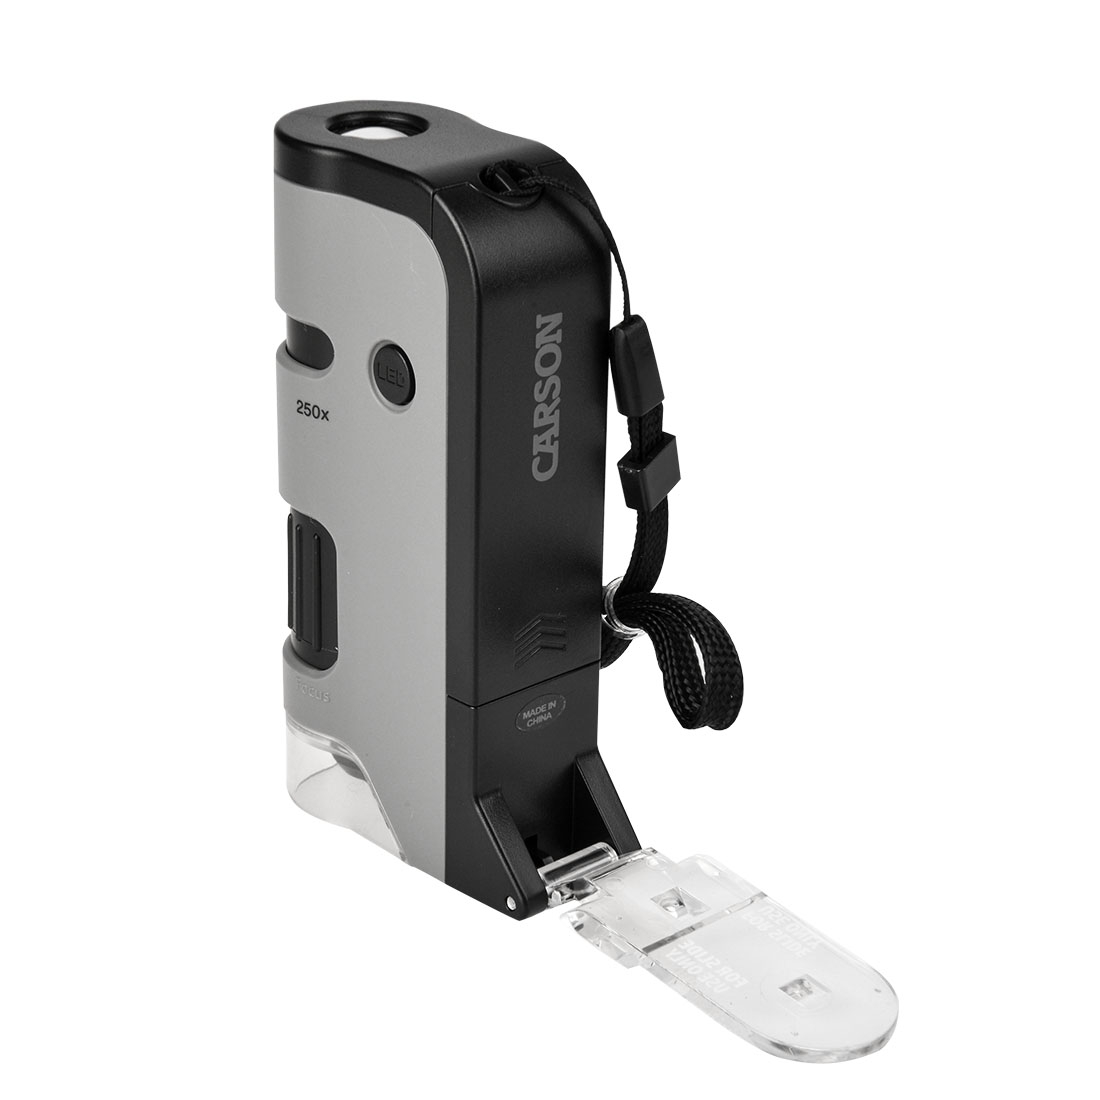 Microscope de poche avec base rabattable et clip pour smartphone  grossissement 100 - 250x